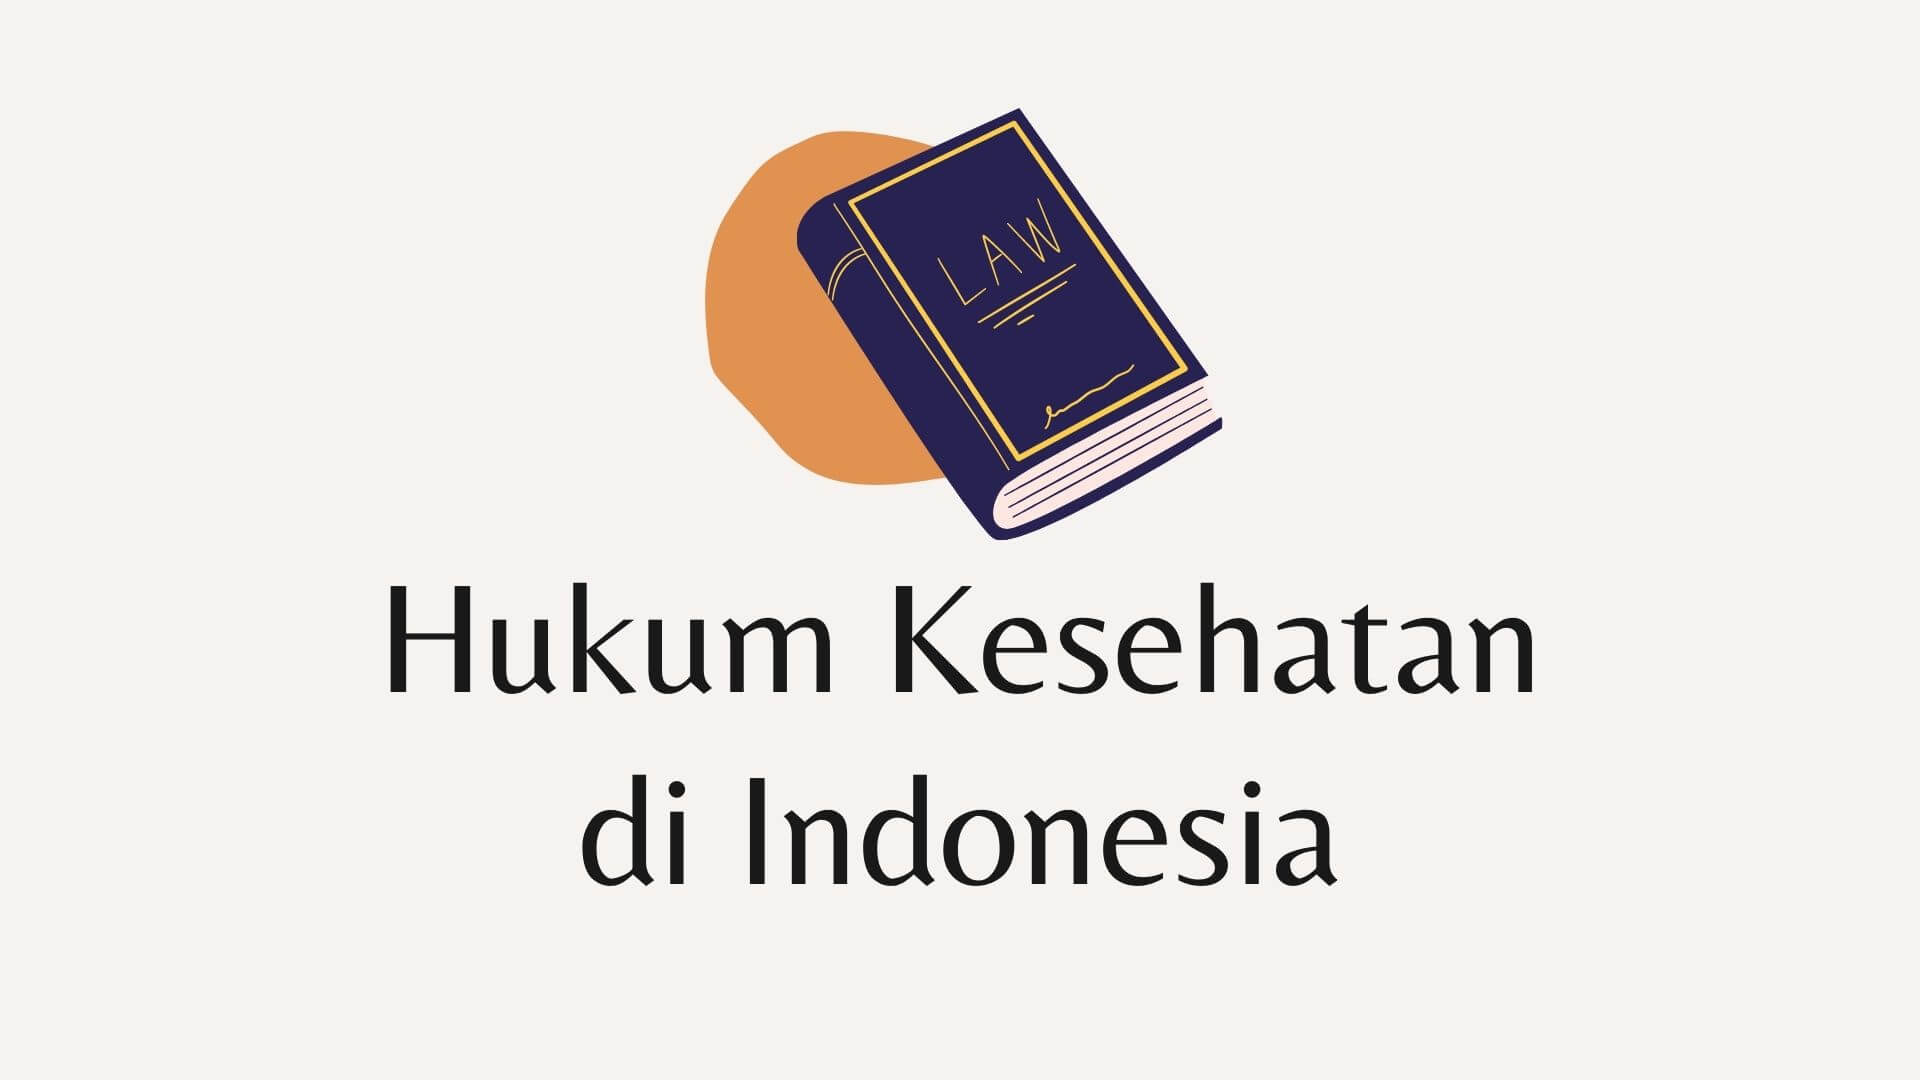 Sejarah Hukum Kesehatan di Indonesia